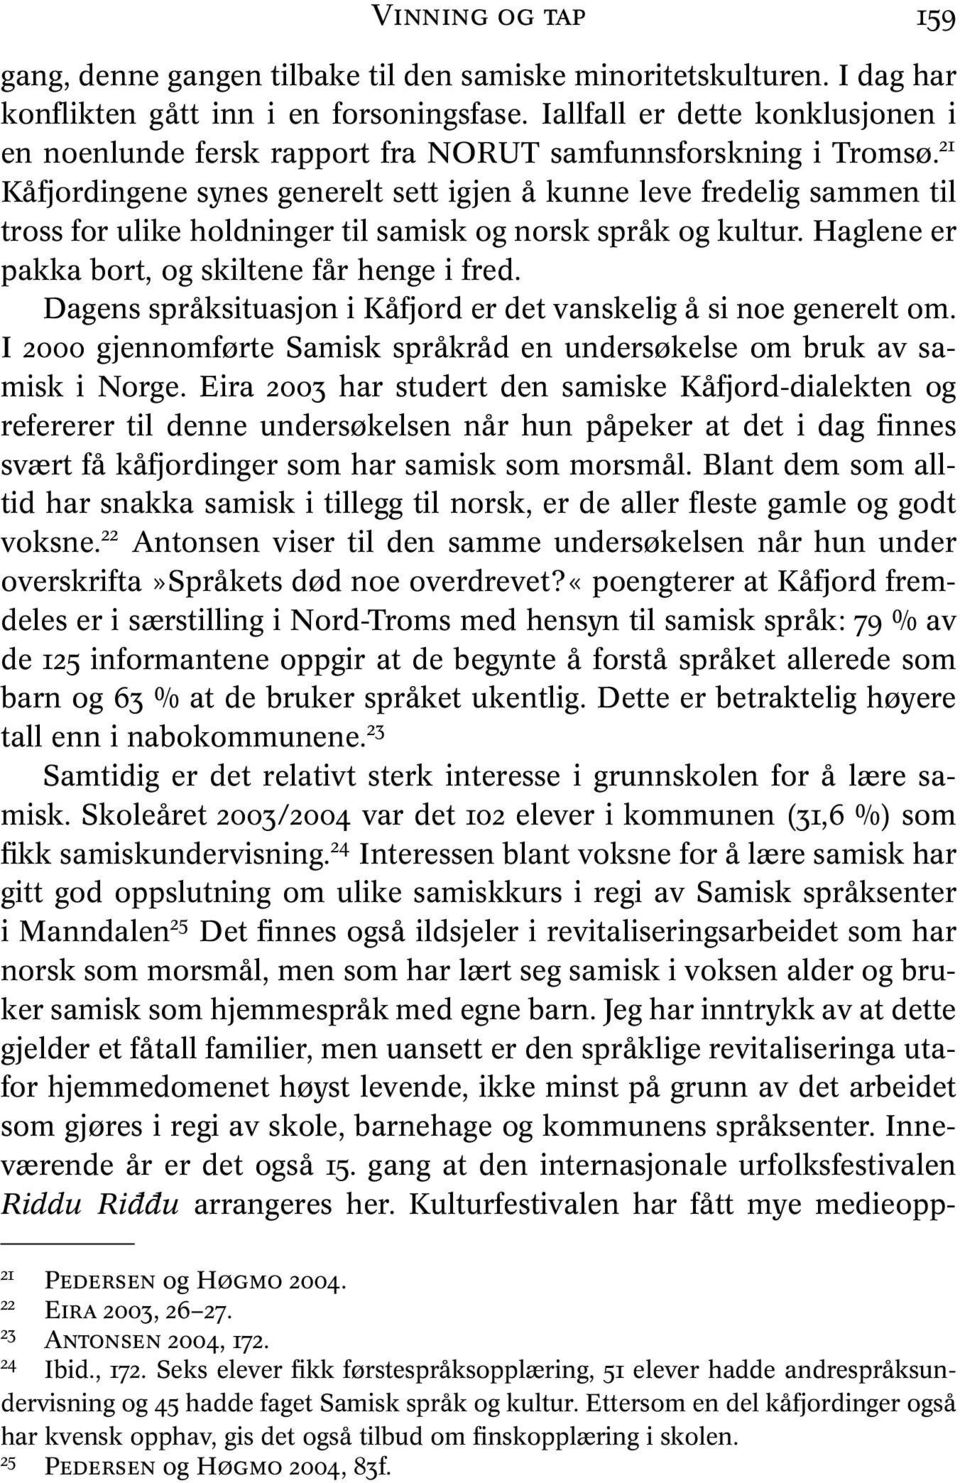 21 Kåfjordingene synes generelt sett igjen å kunne leve fredelig sammen til tross for ulike holdninger til samisk og norsk språk og kultur. Haglene er pakka bort, og skiltene får henge i fred.